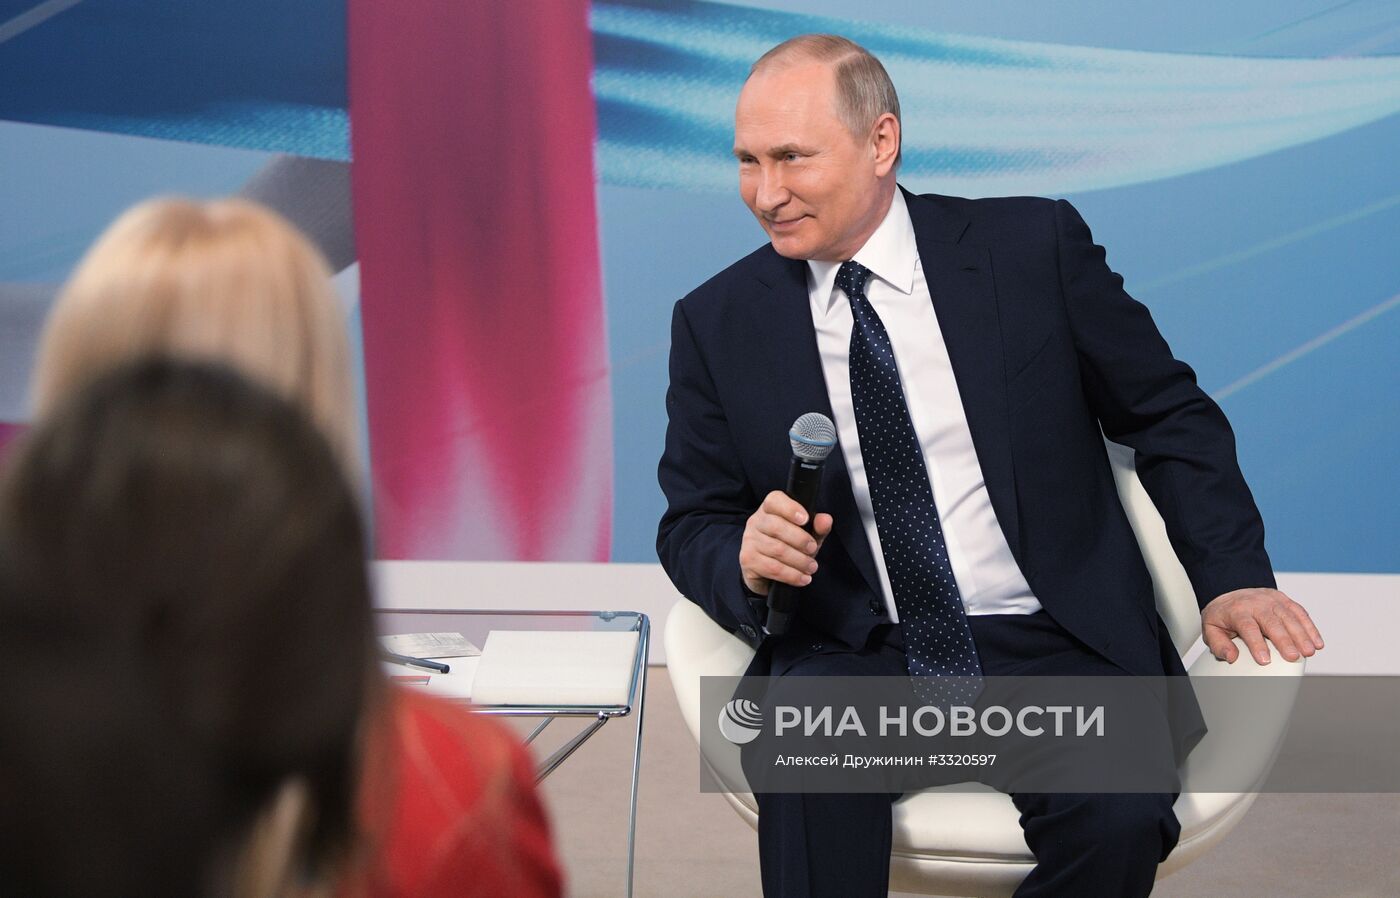 Президент РФ В. Путин принял участие в работе форума "Россия – страна возможностей"